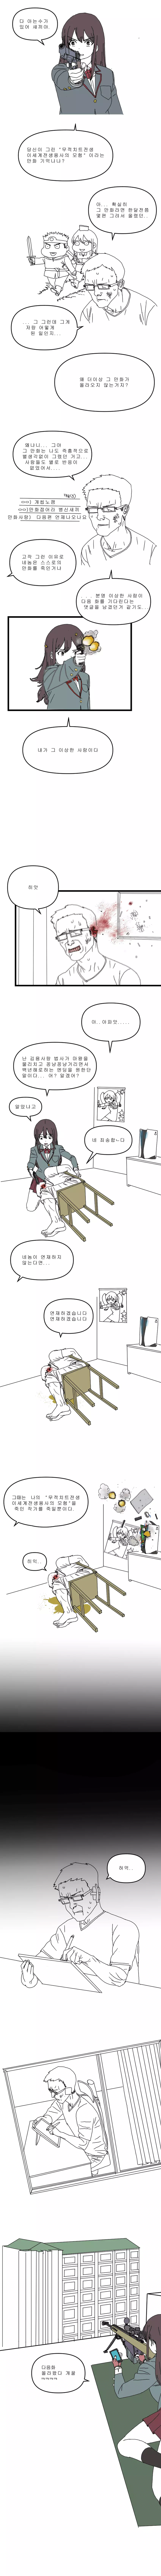 만화 청부업자.manhwa